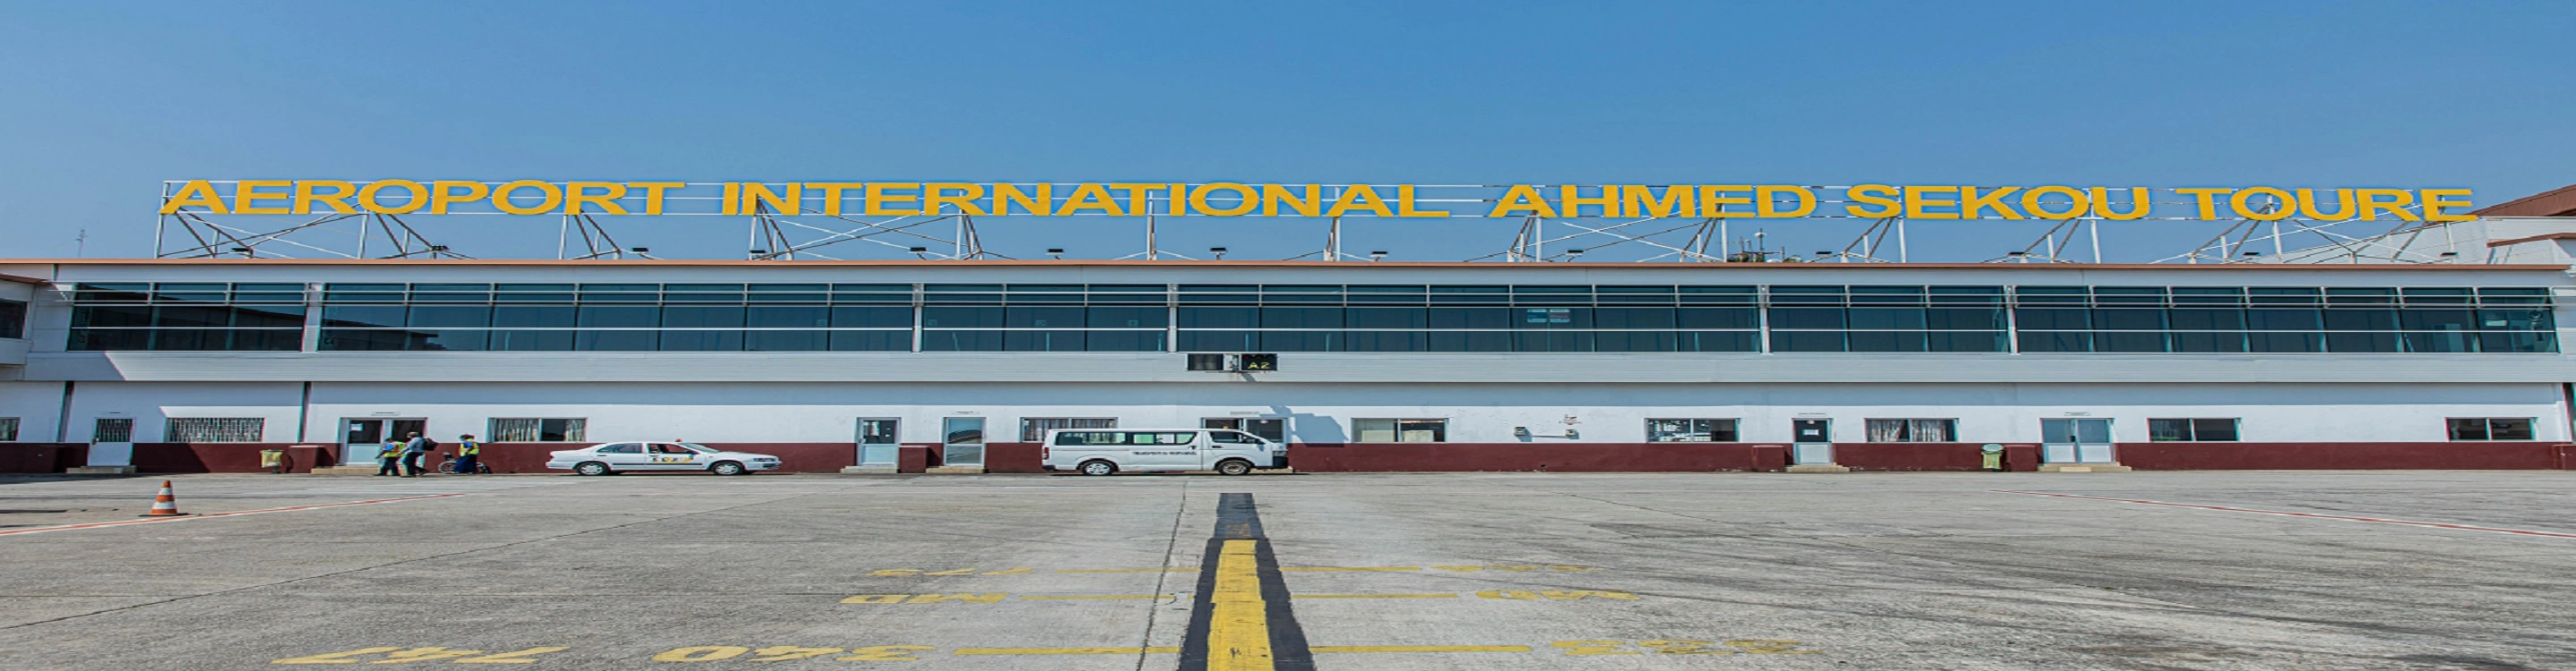 AEROPORT INTERNATIONAL AHMED SEKOU TOURE, SOGEAC